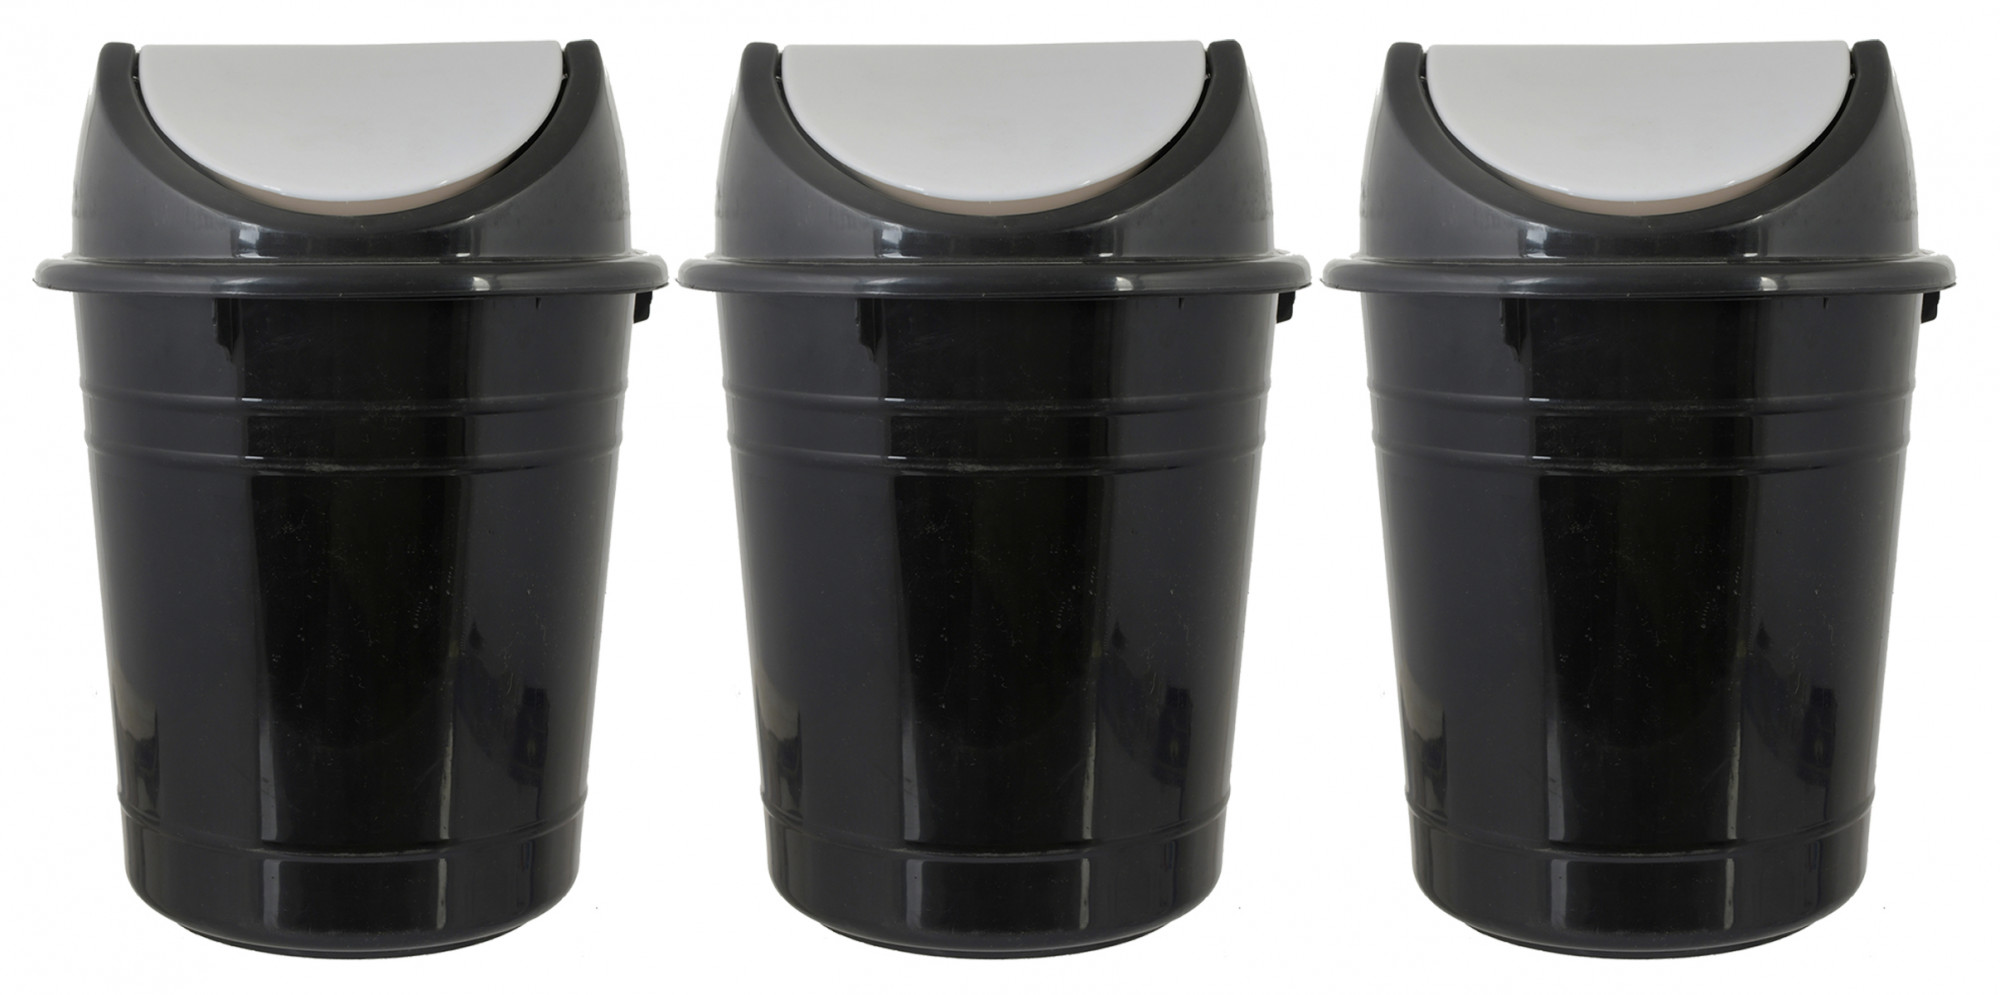 Kuber Industries Plastic Medium Size Swing Dustbin/ Swing Garbage Bin/ Waste Bin, 10 Liters (Black & White)